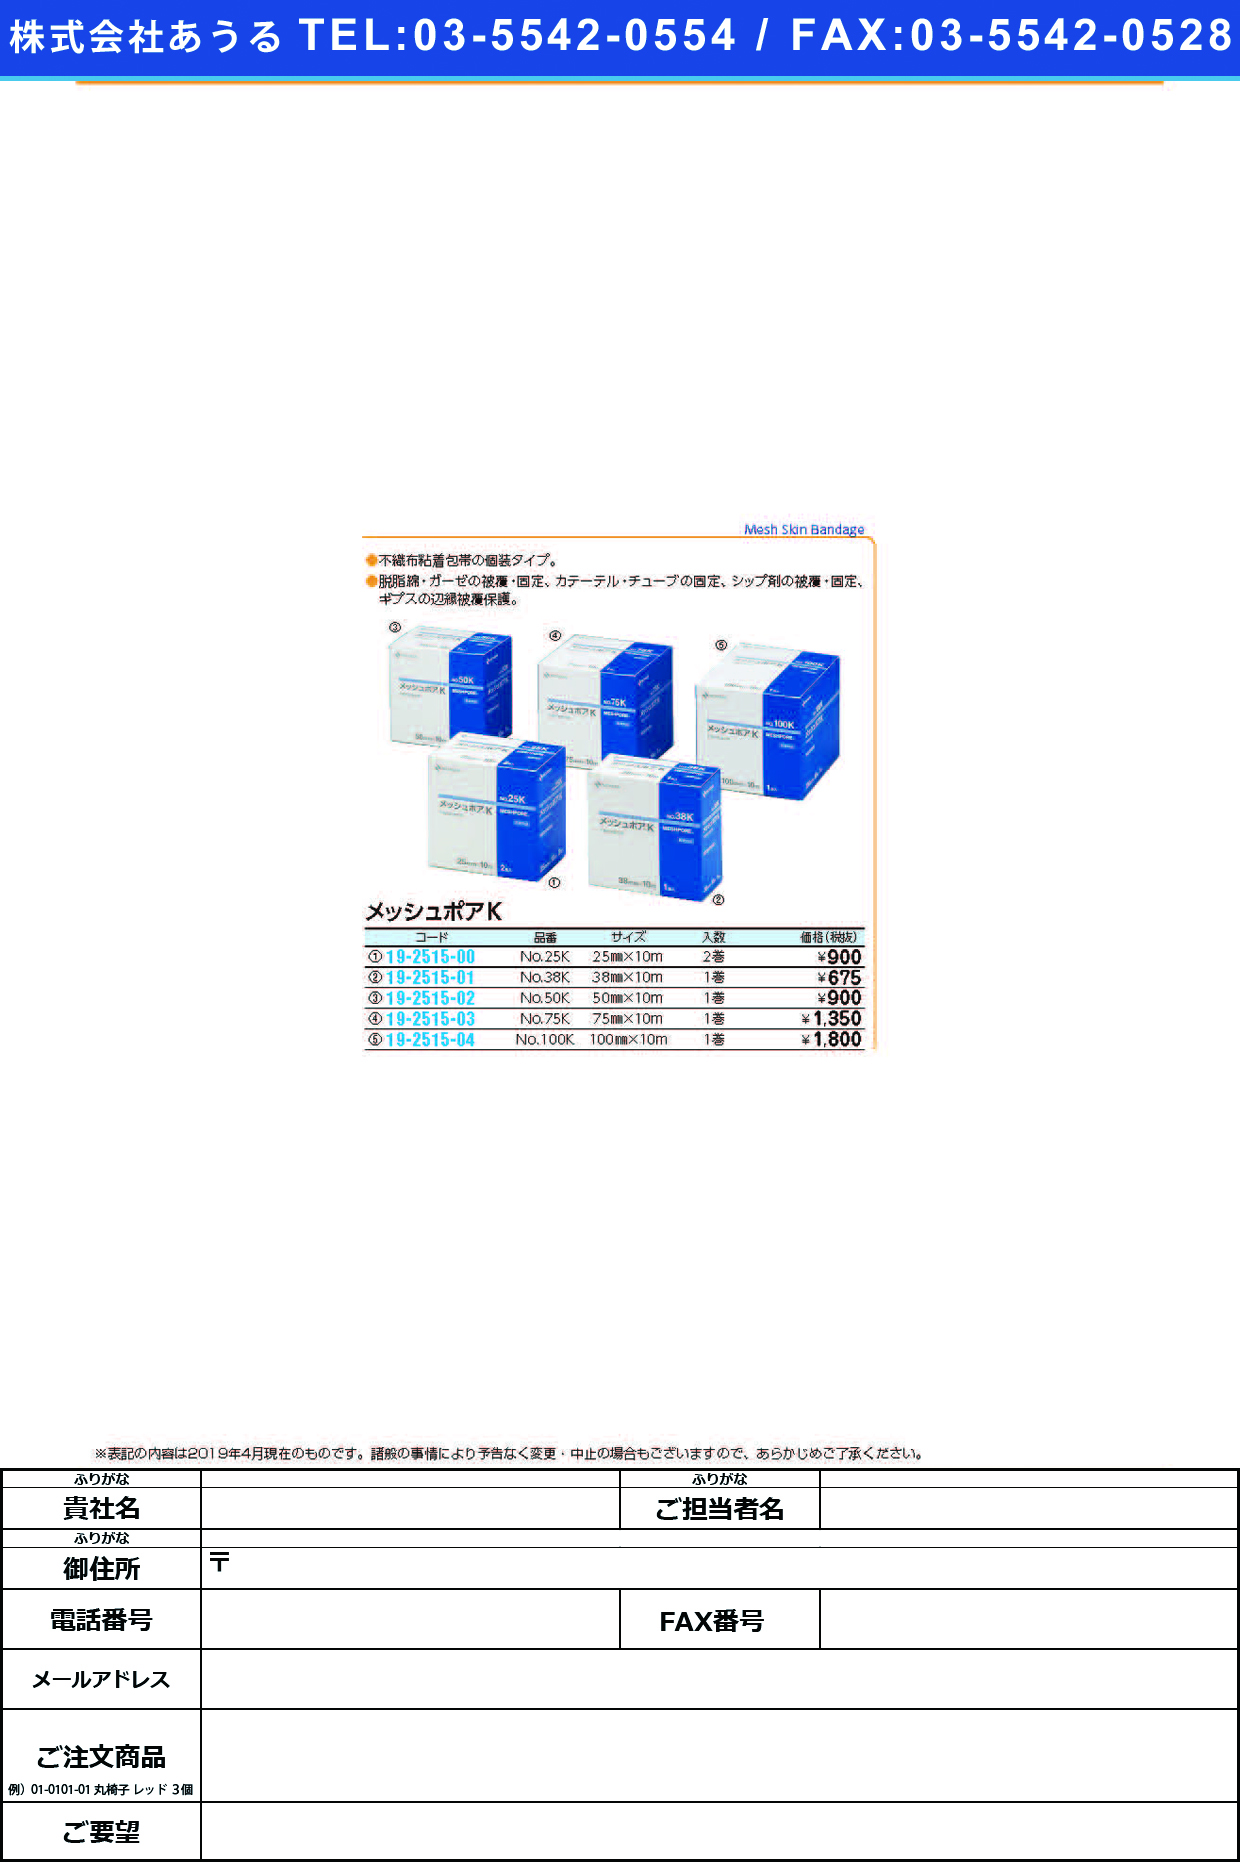 (19-2515-02)メッシュポアＫ NO.50K(50MMX10M) ﾒｯｼｭﾎﾟｱK(ニチバン)【1個単位】【2019年カタログ商品】